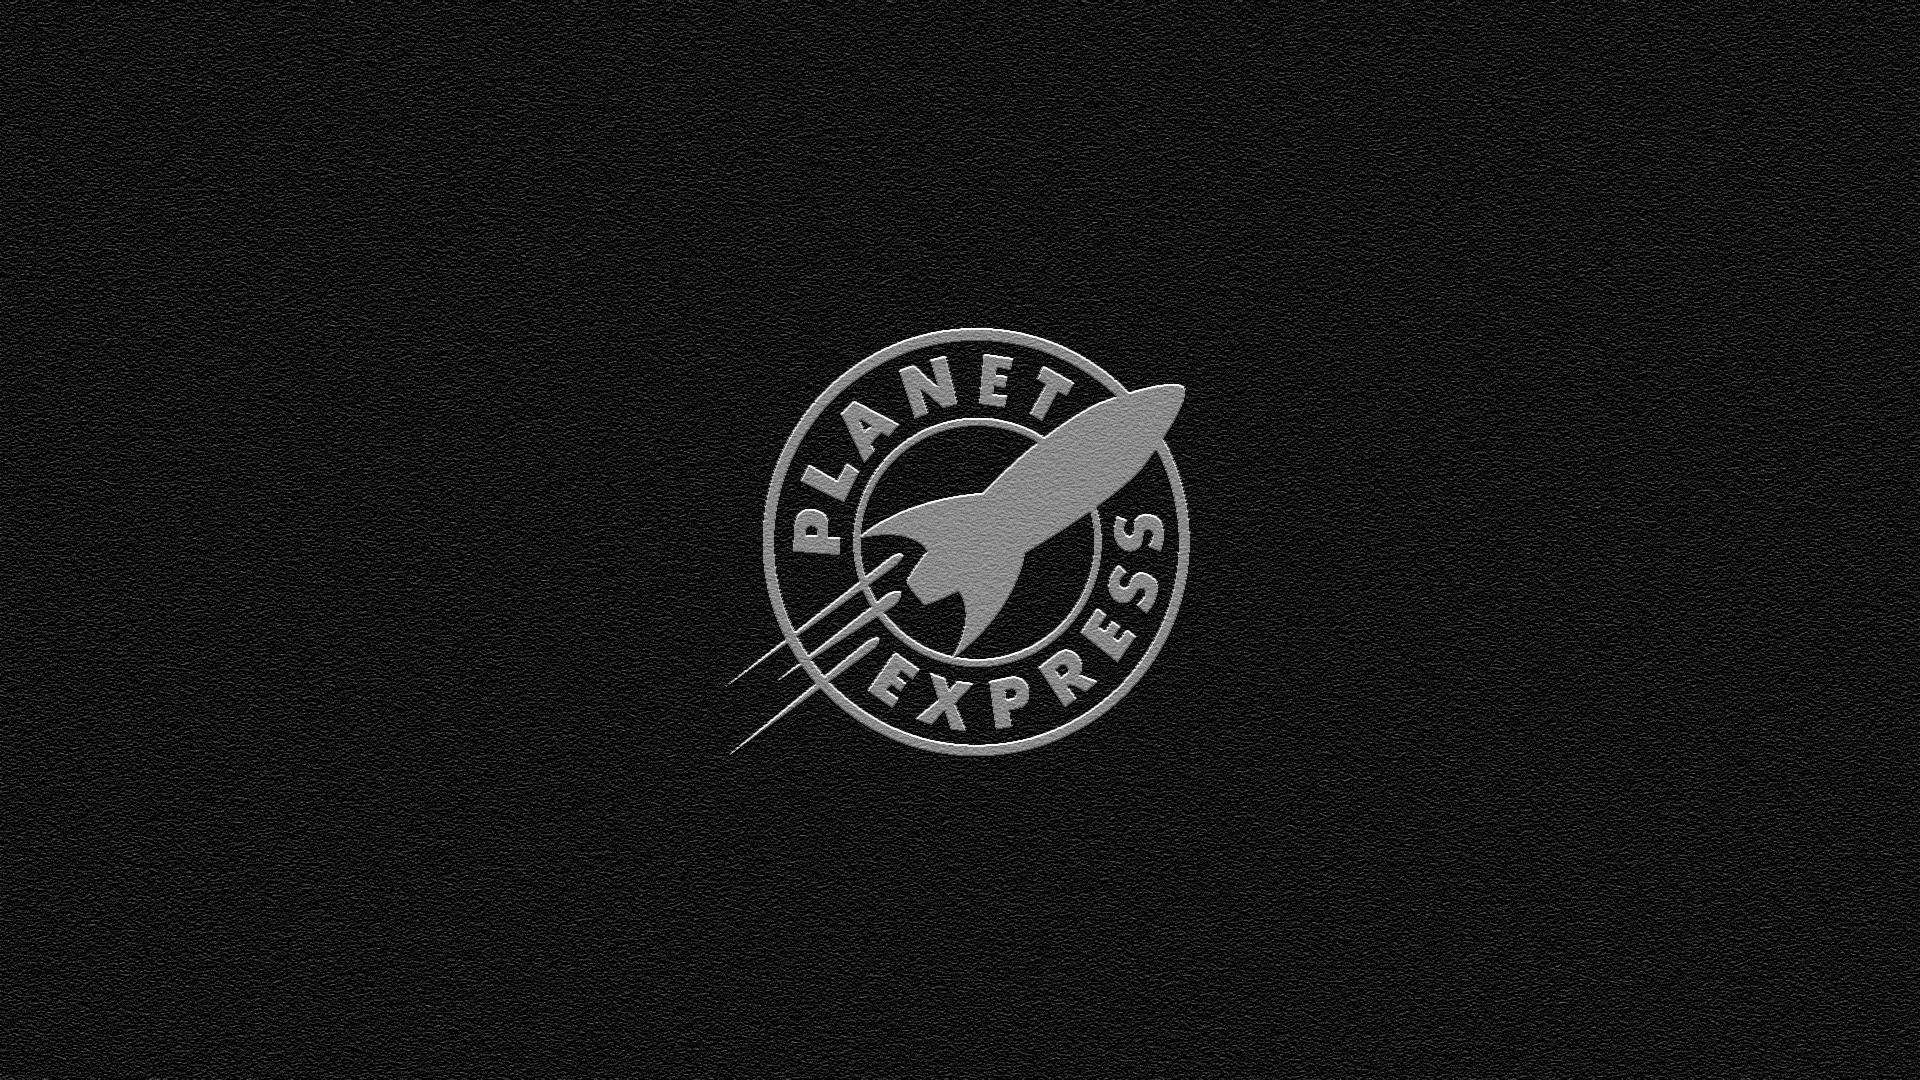 Planet Express wallpaper 215157